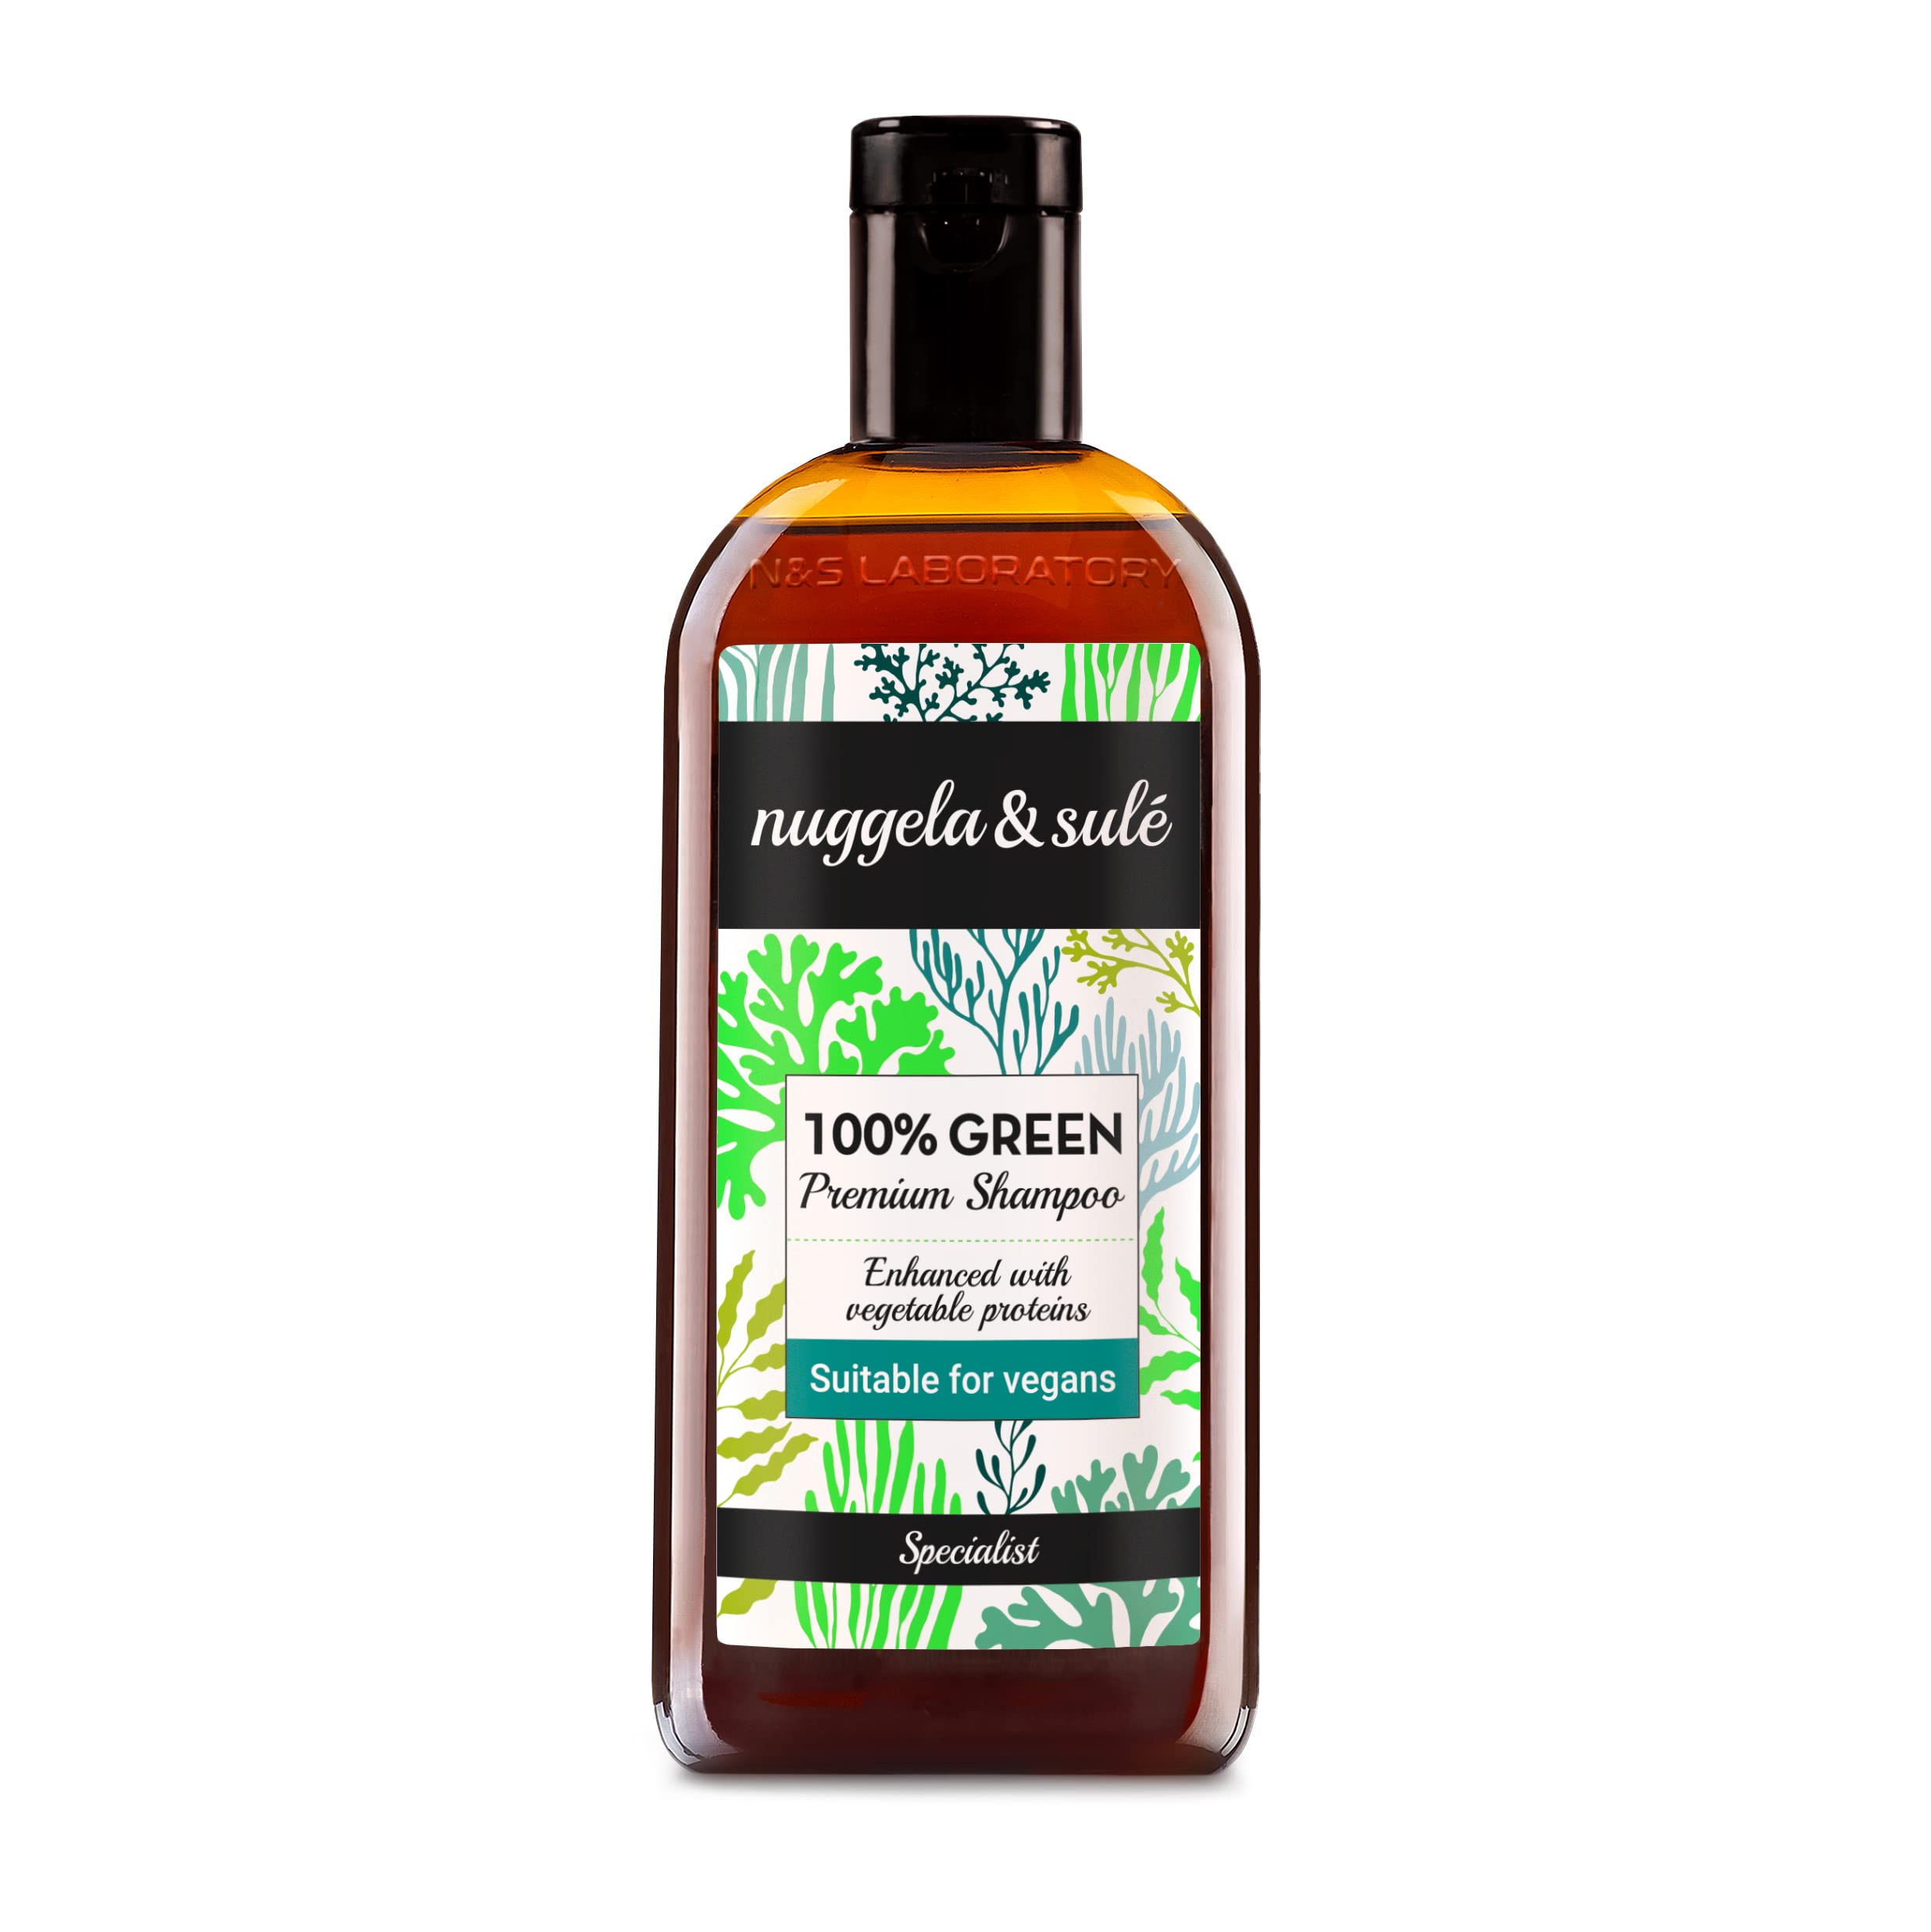 Nuggela & Sulé 100% GREEN Shampoo. VEGAN. Mit pflanzlichen Proteinen, um das Haar zu stärken und das Volumen zu erhöhen. 1 x 250ml.